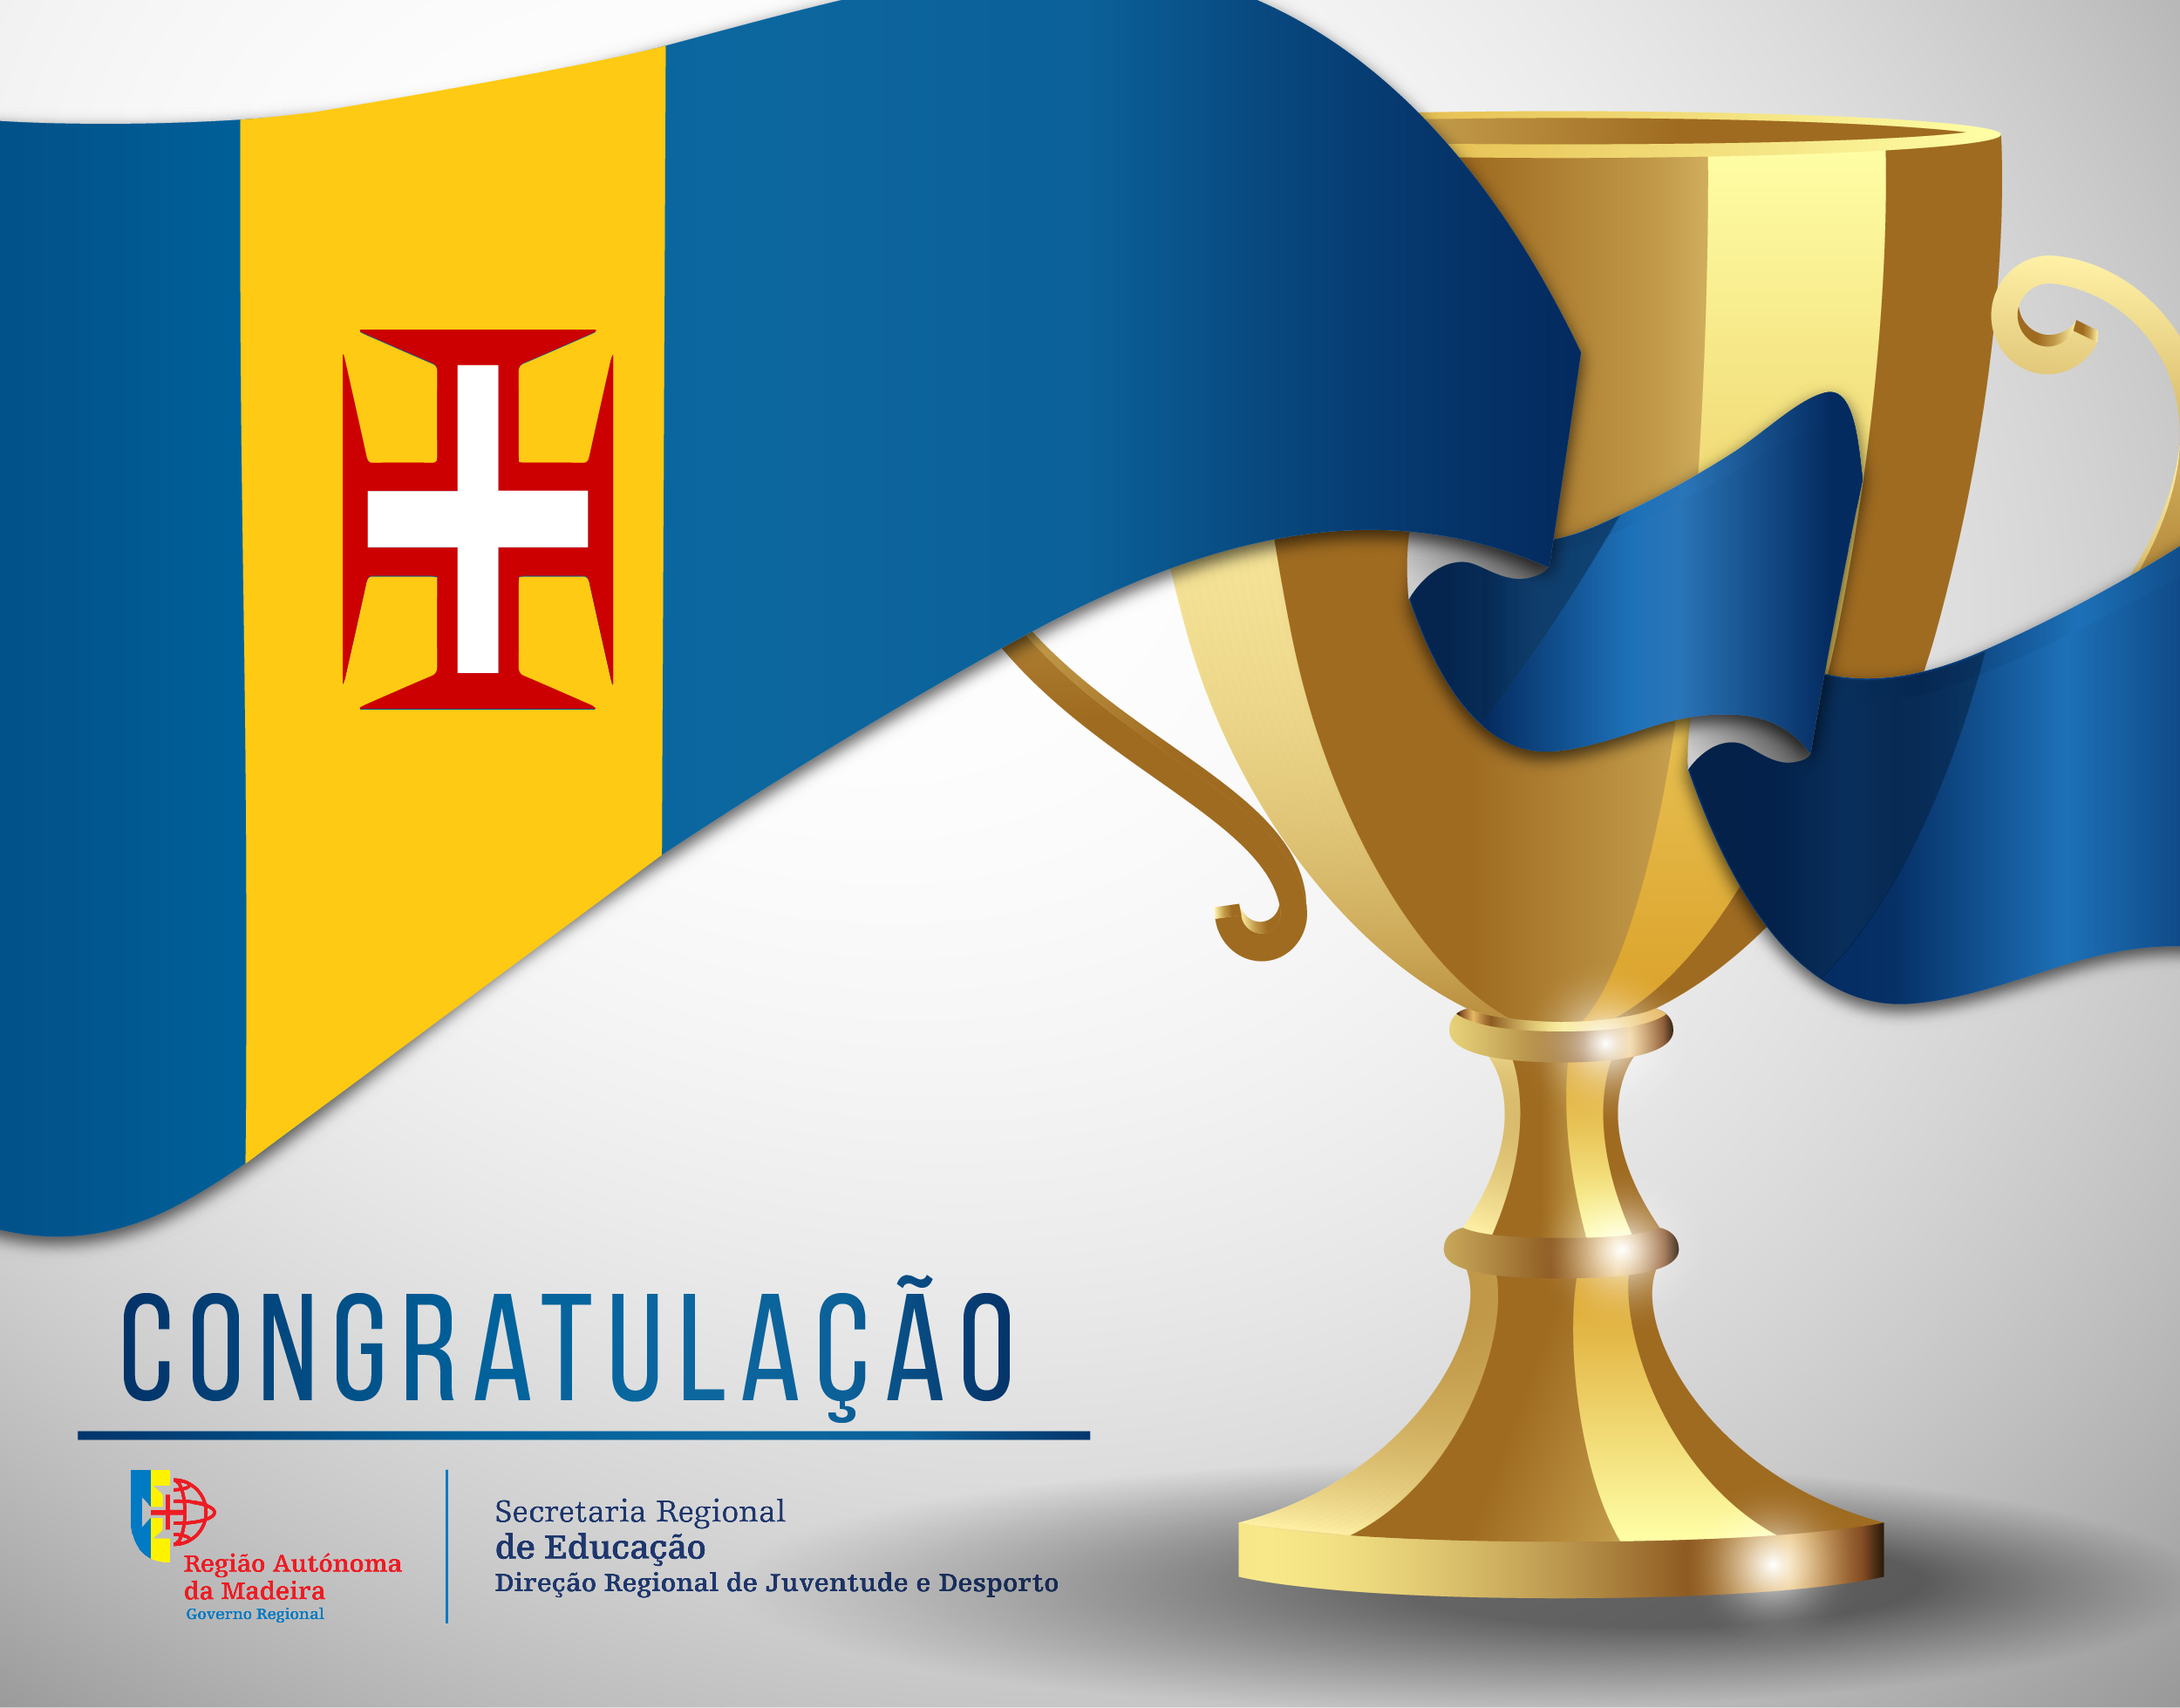 Congratulação - Alexandre Freitas (CS Marítimo)